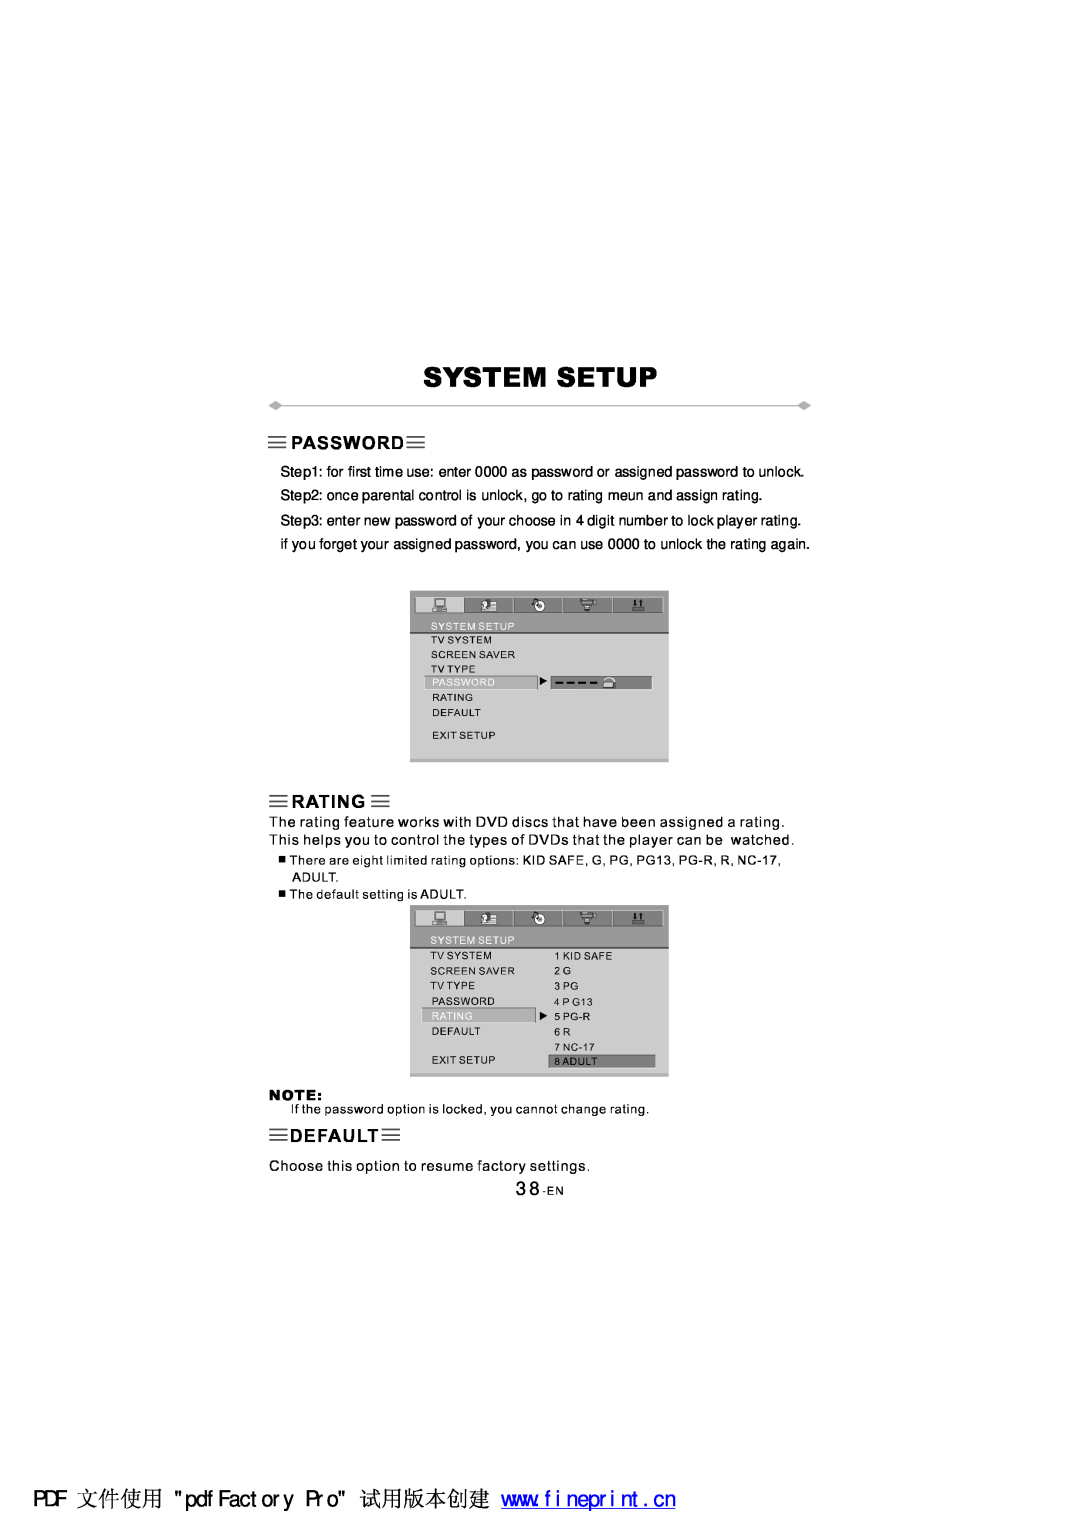 NextBase SDV97-AC manual 38-EN 